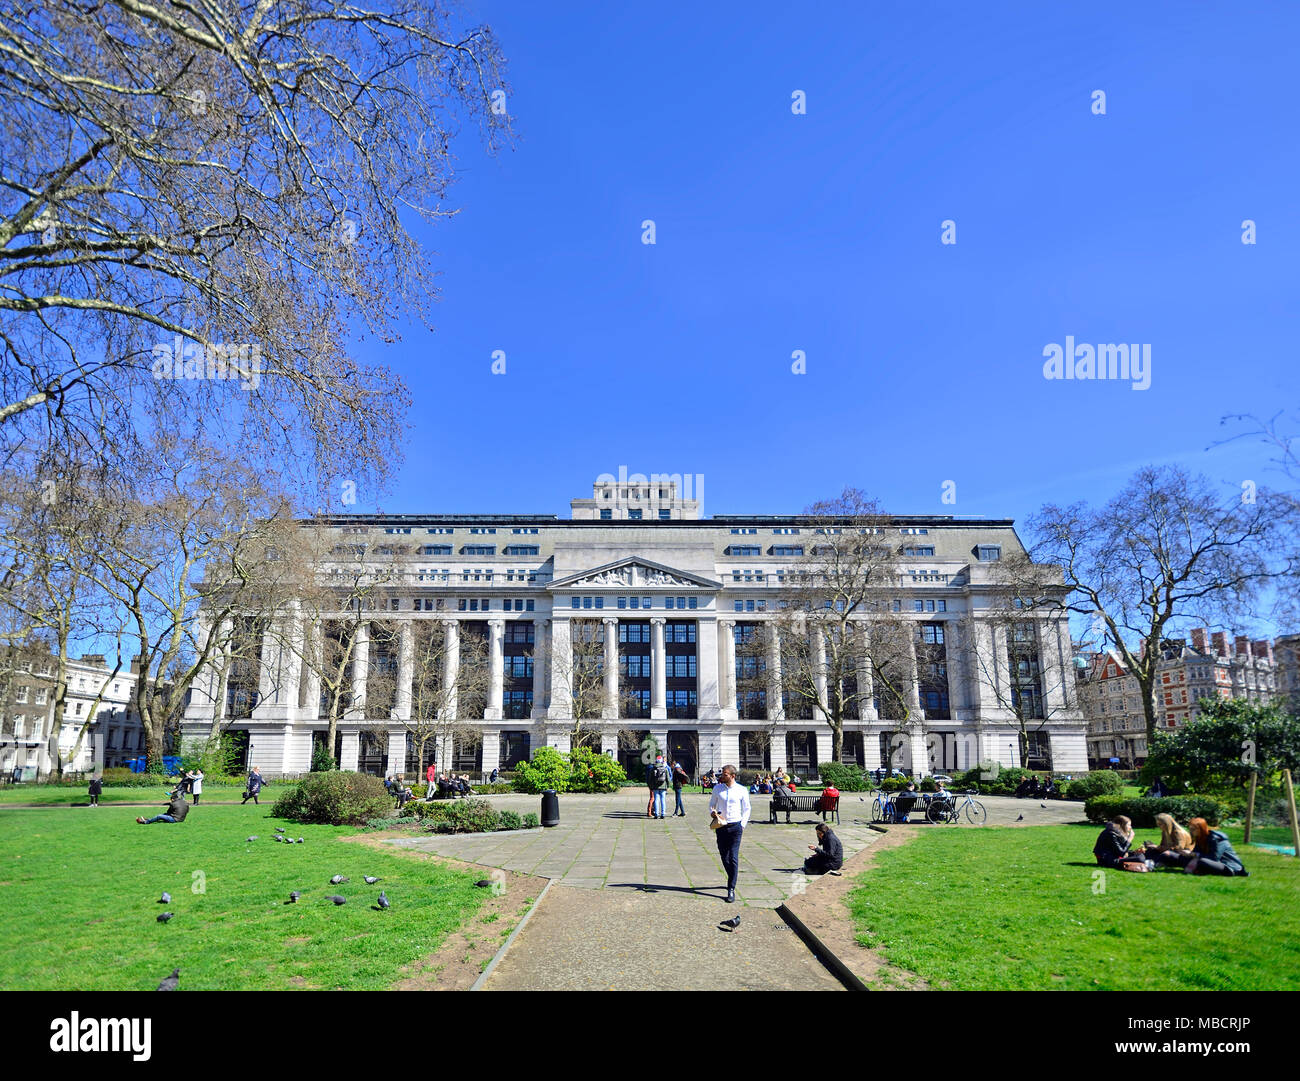 Londres, Angleterre, Royaume-Uni. Victoria House, Bloomsbury Square. Années 1920, bâtiment classé Grade II Banque D'Images